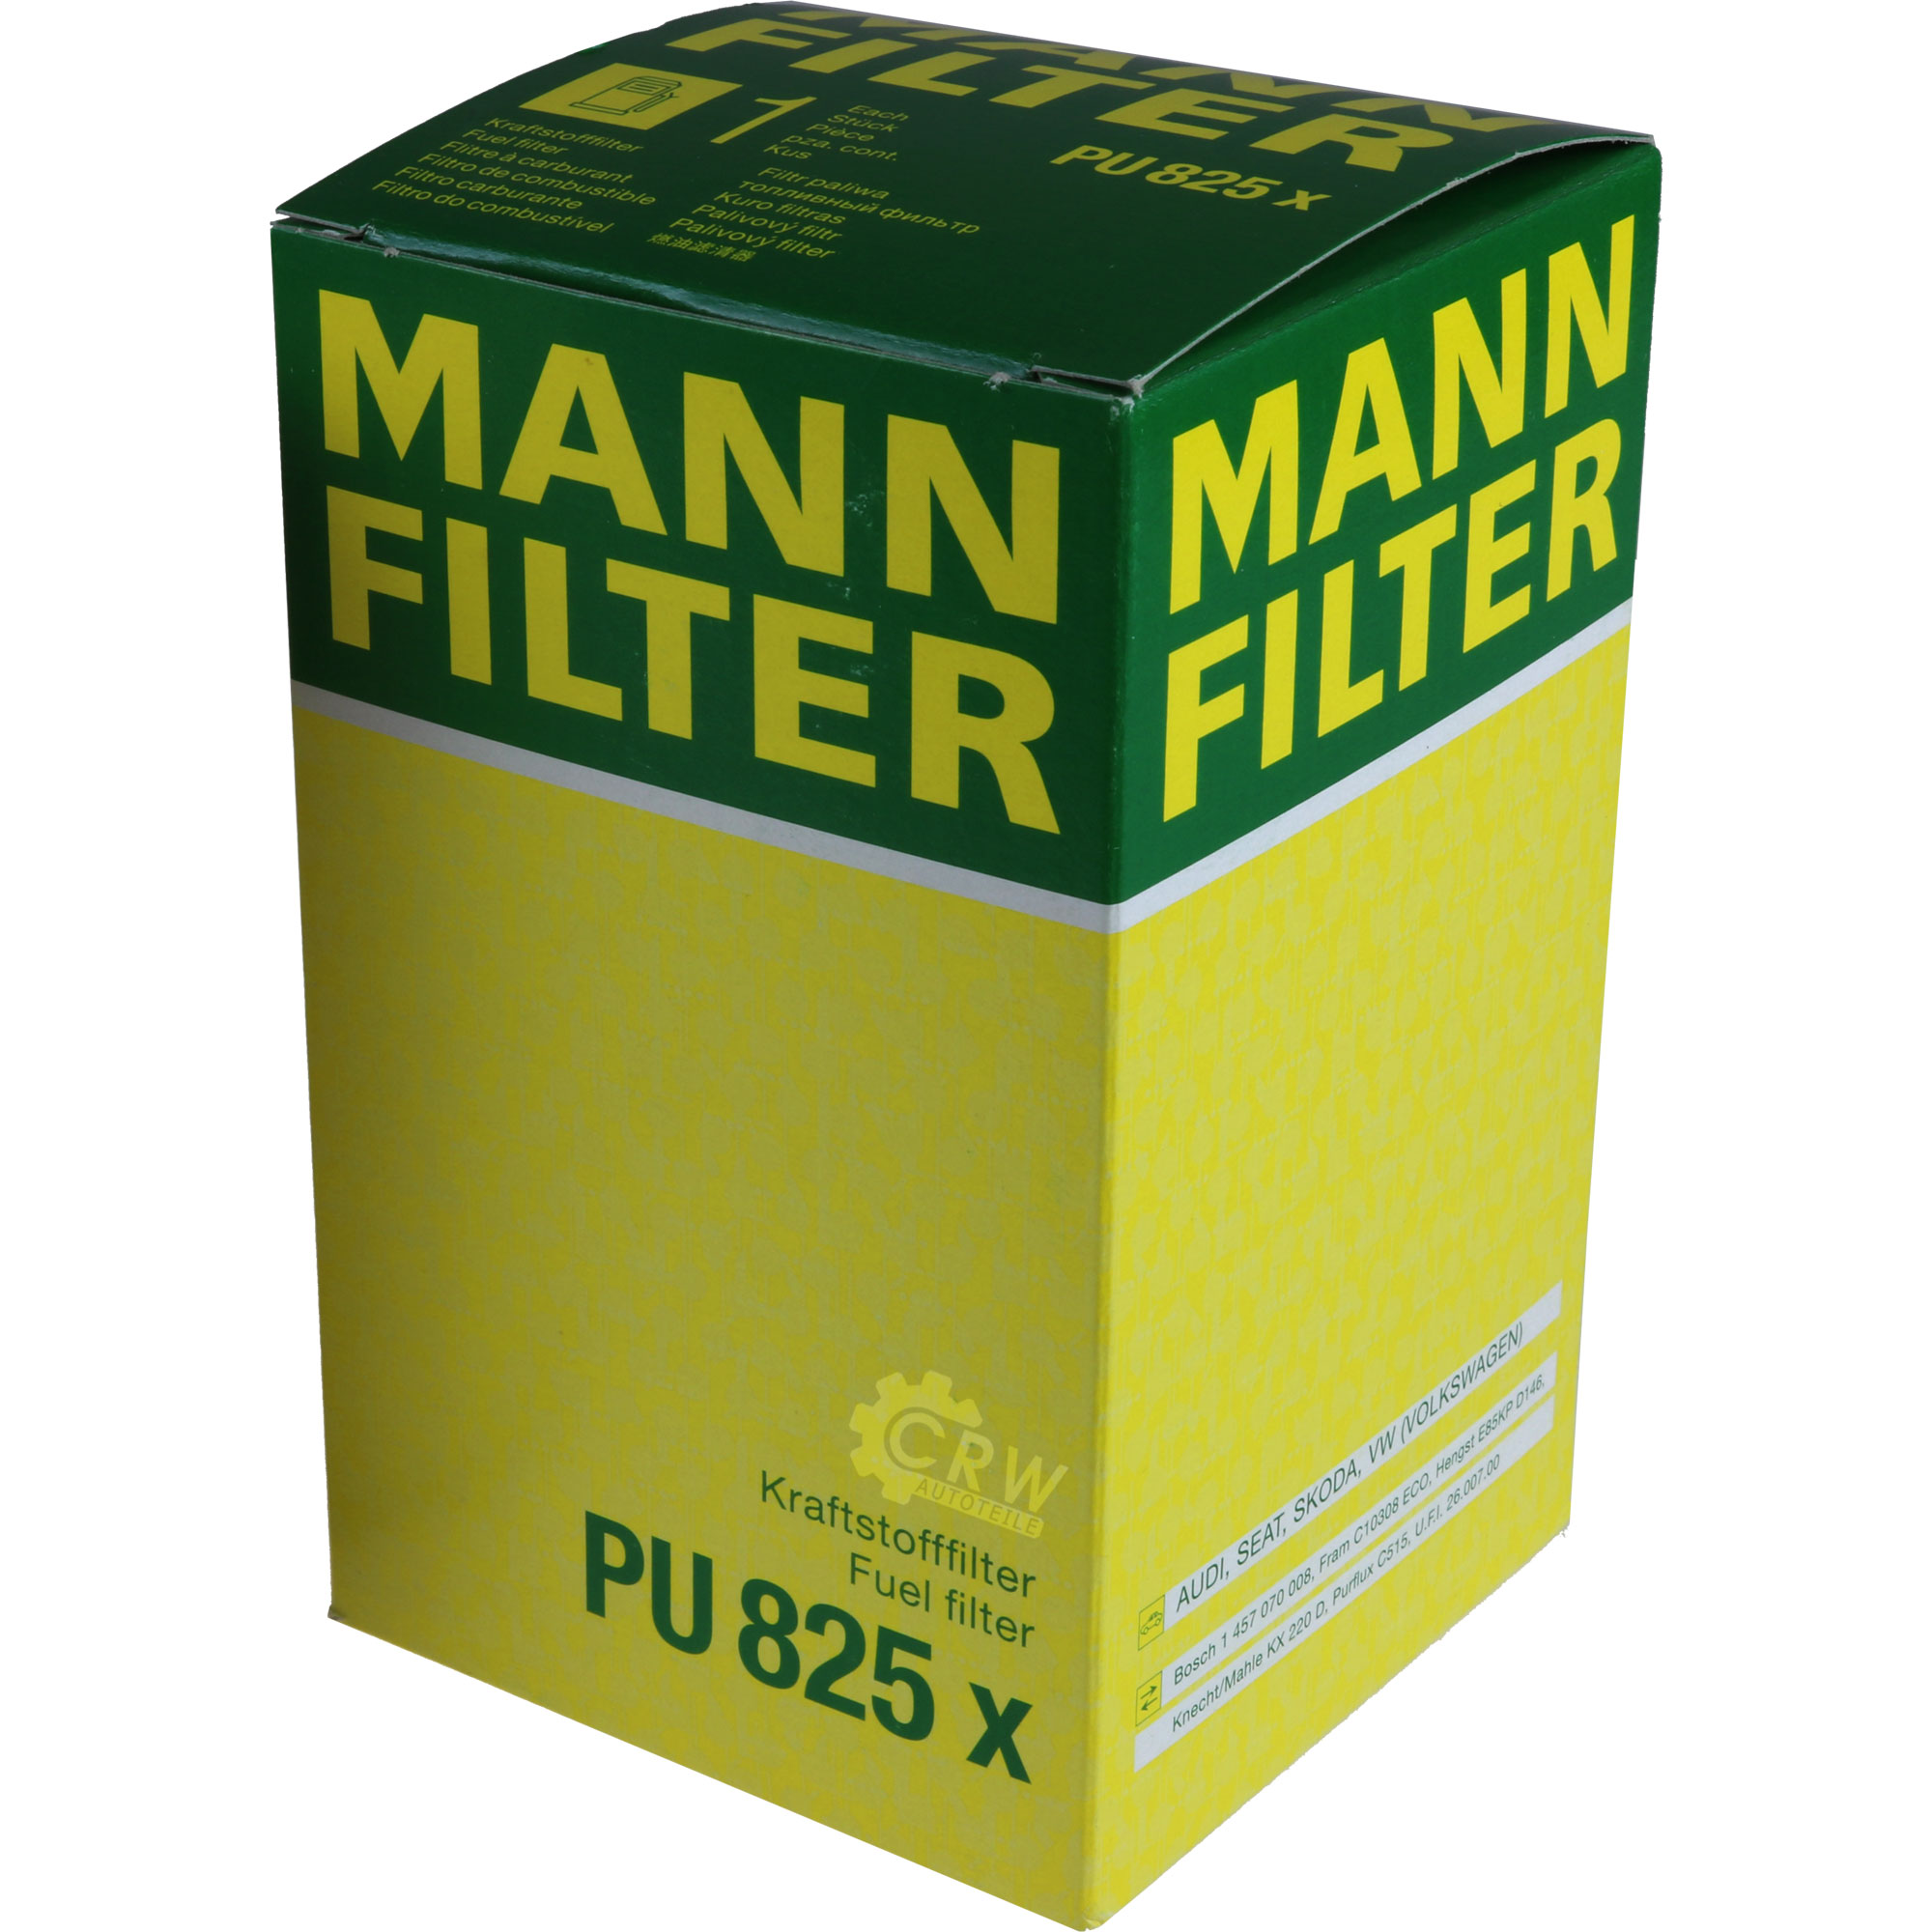 MANN-FILTER Kraftstofffilter PU 825 x Fuel Filter